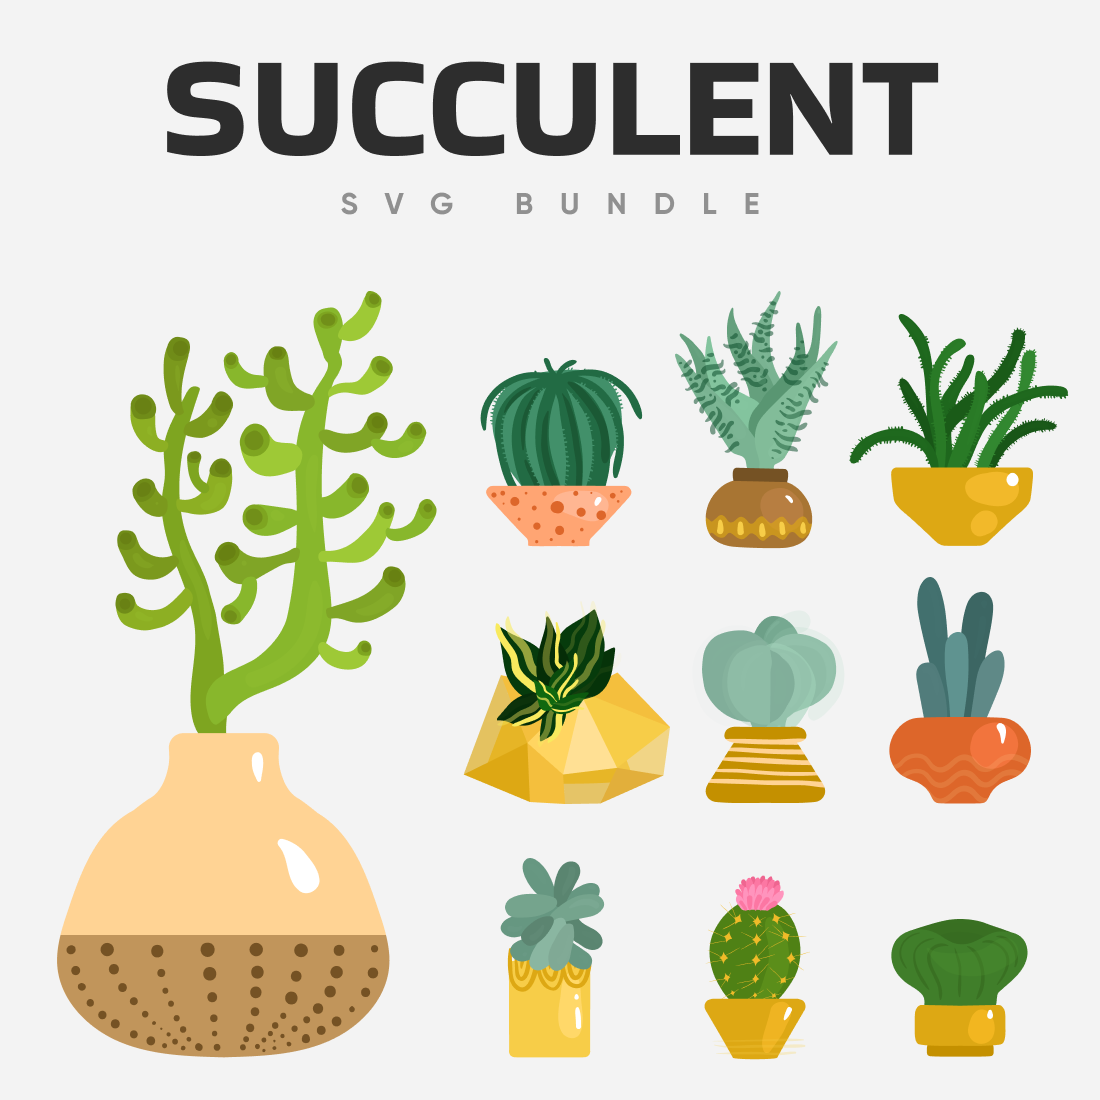 Succulent svg bundle.